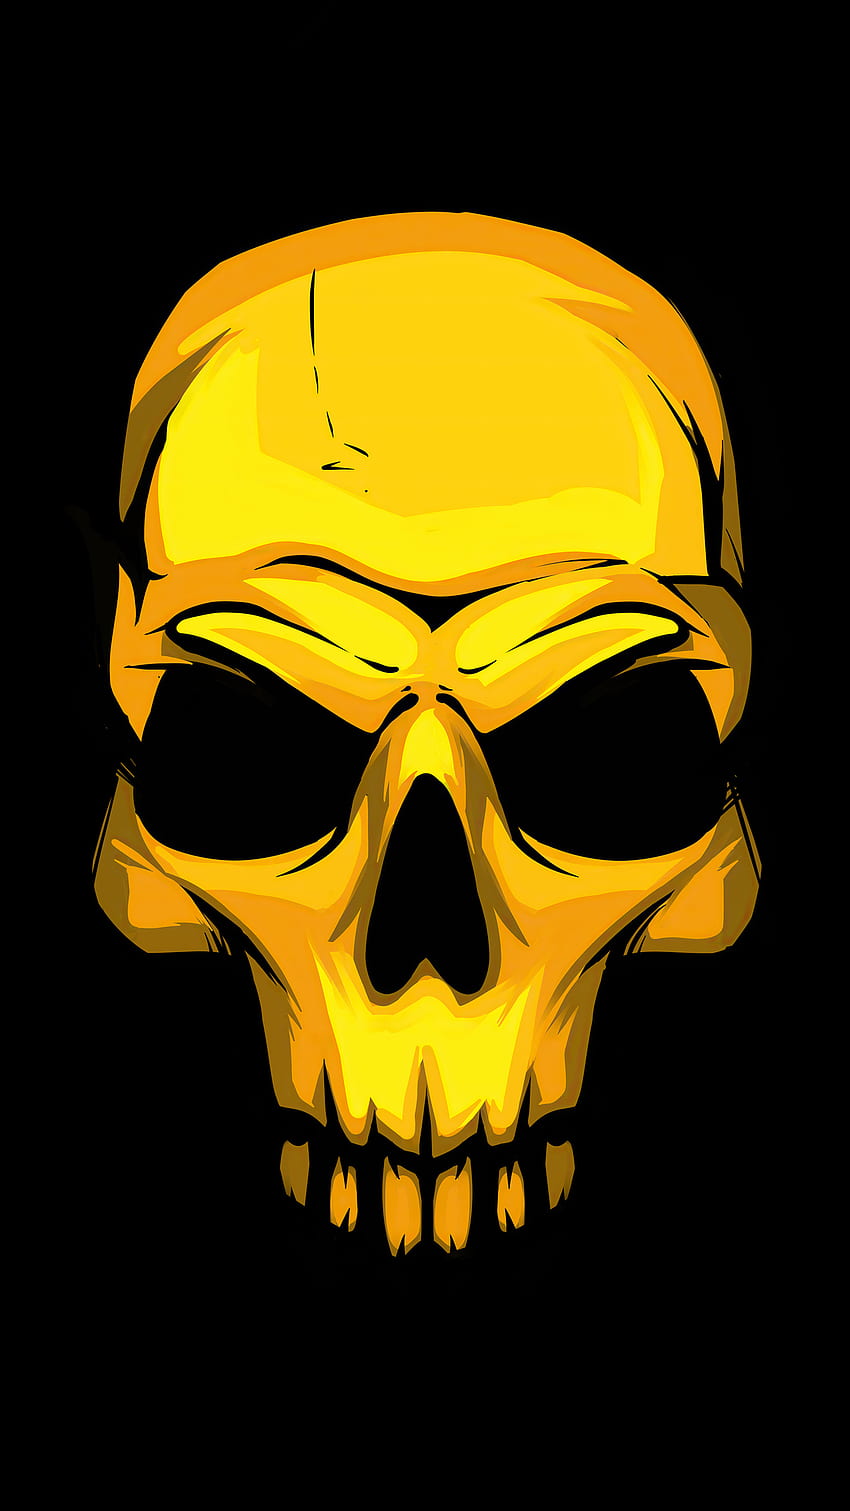 Chiêm ngưỡng chiếc đầu lâu vàng rực rỡ trên nền đen giúp bạn tưởng tượng và khám phá thế giới của những kẻ cướp biển huyền thoại. (Admire the sparkling gold skull on a black background to imagine and explore the world of legendary pirates.)